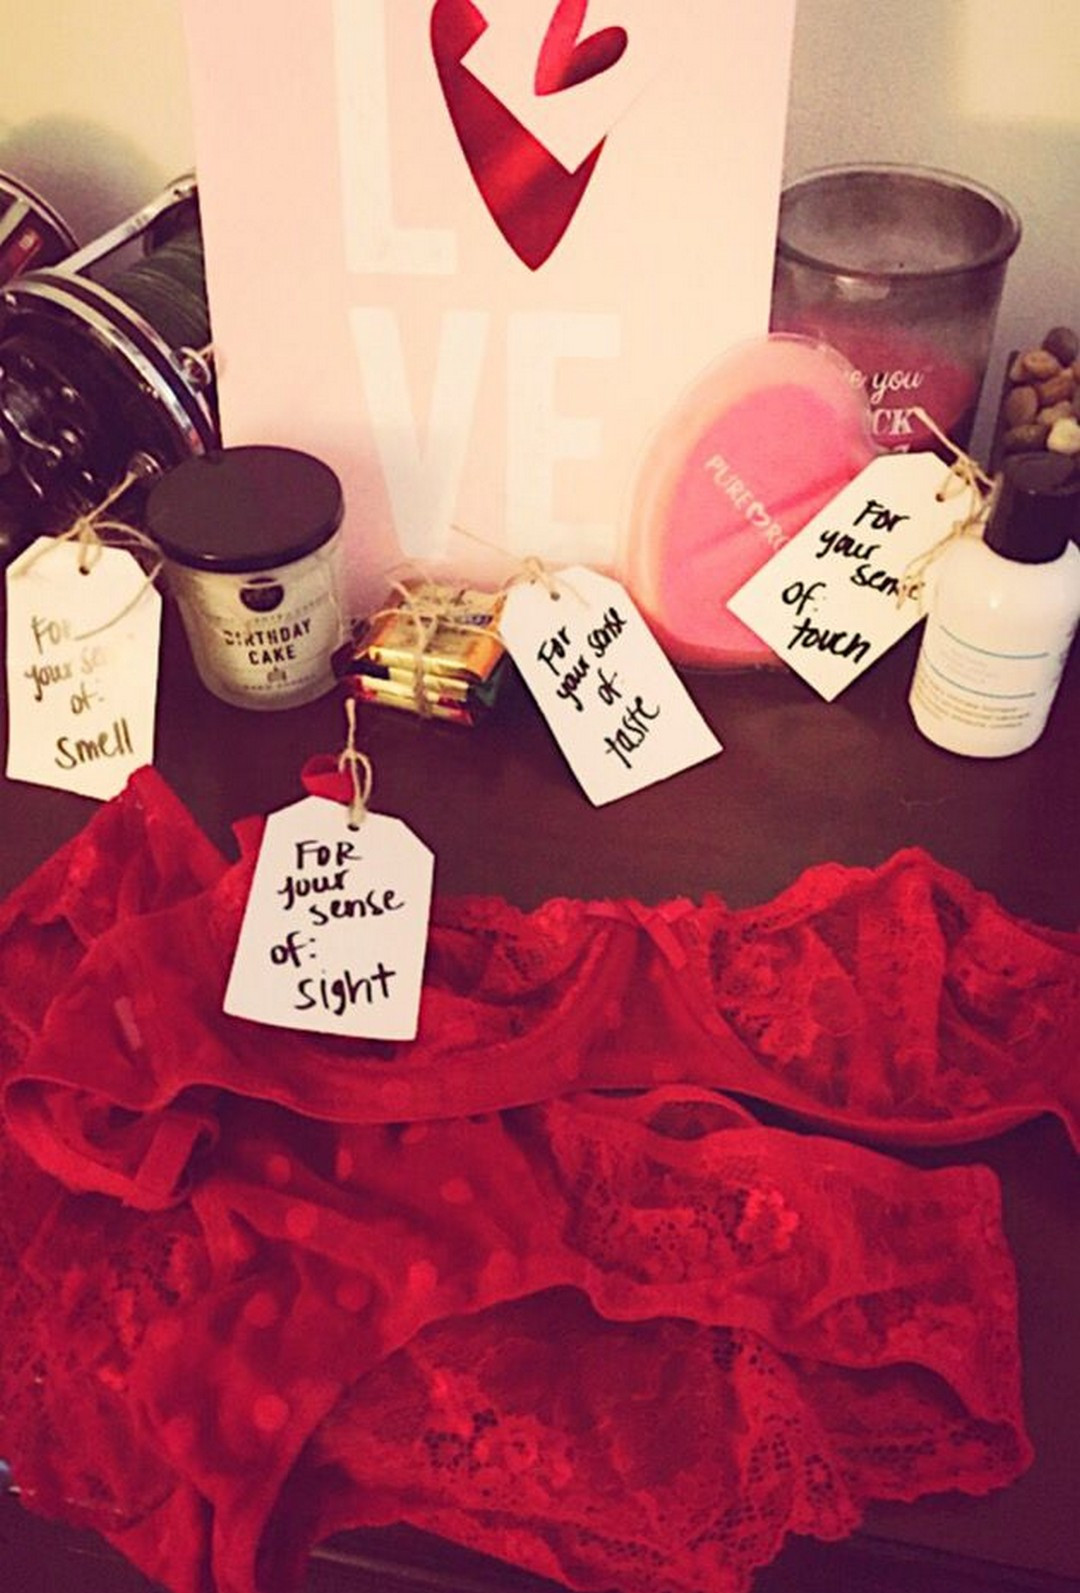 Gift Ideas Valentines Boyfriend
 Romantic DIY Valentines Day Gifts For Your Boyfriend